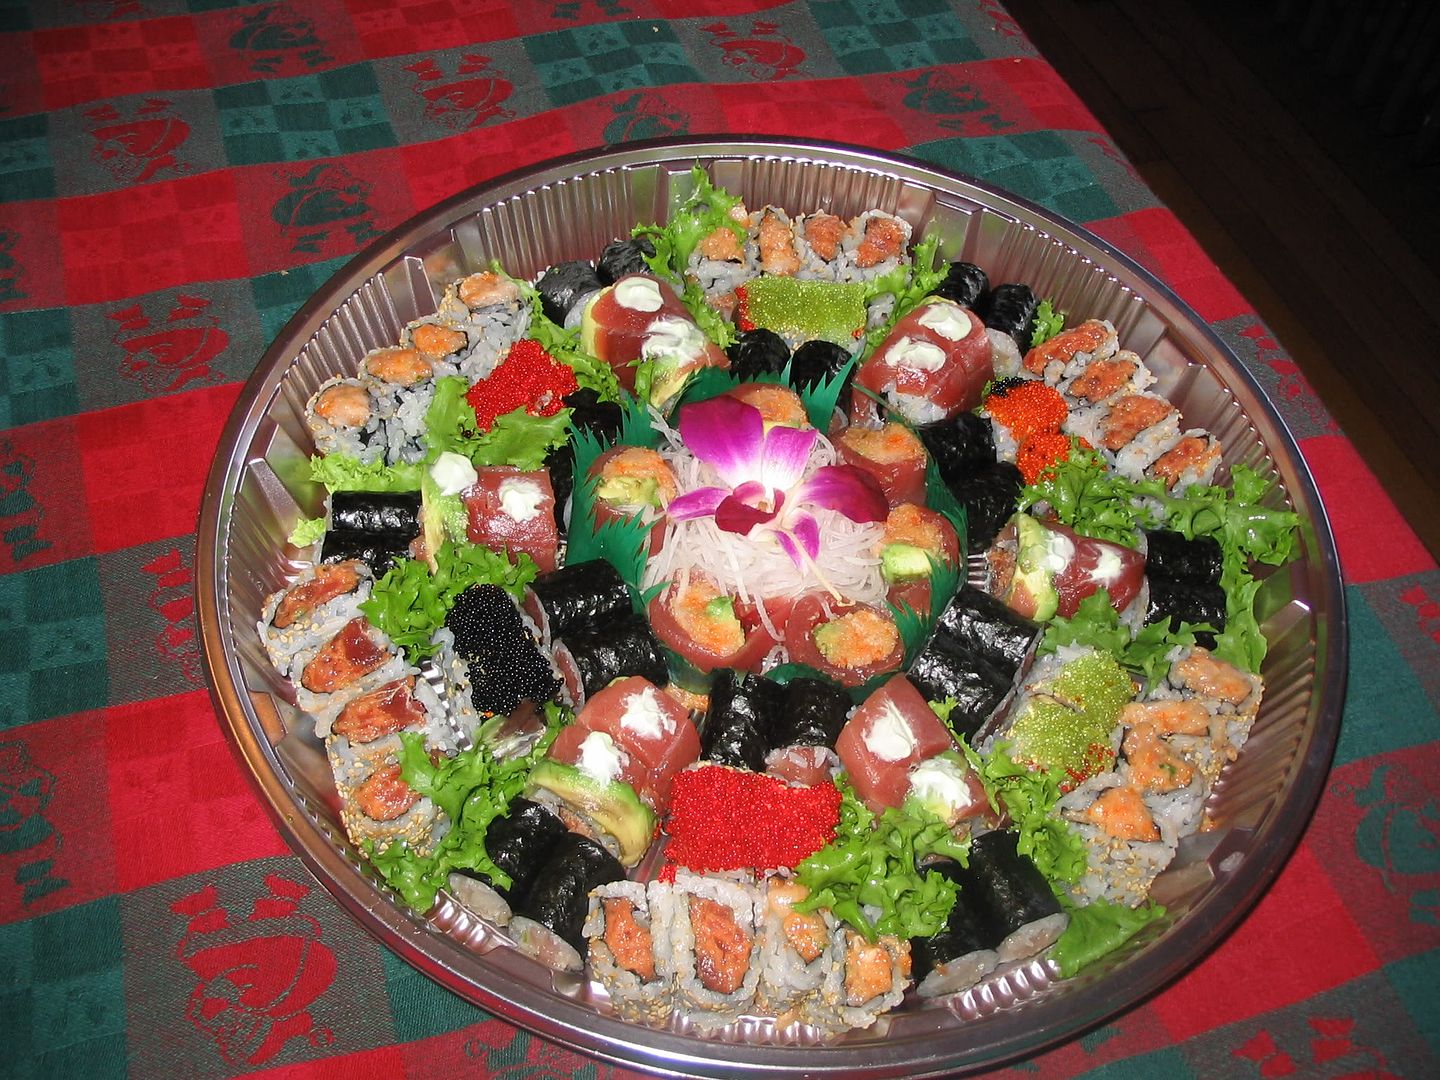 a28c.jpg Sushi image by borgia_johl